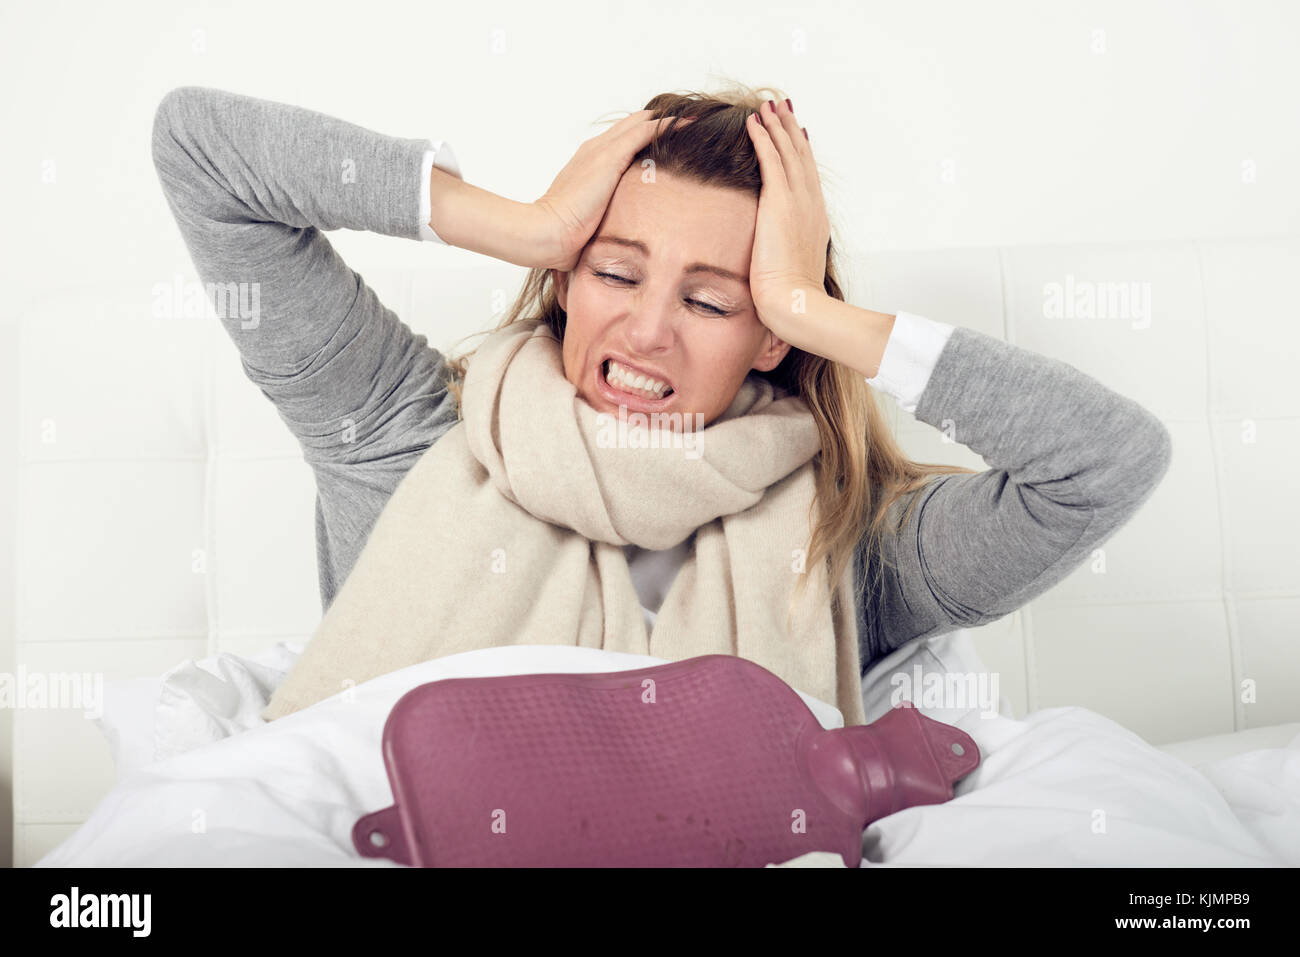 Porträt einer kranken Frau im Bett sitzend mit einer Wärmflasche beim Erfahren akute Kopfschmerzen durch Grippe oder andere schmerzhafte Krankheit verursacht Stockfoto